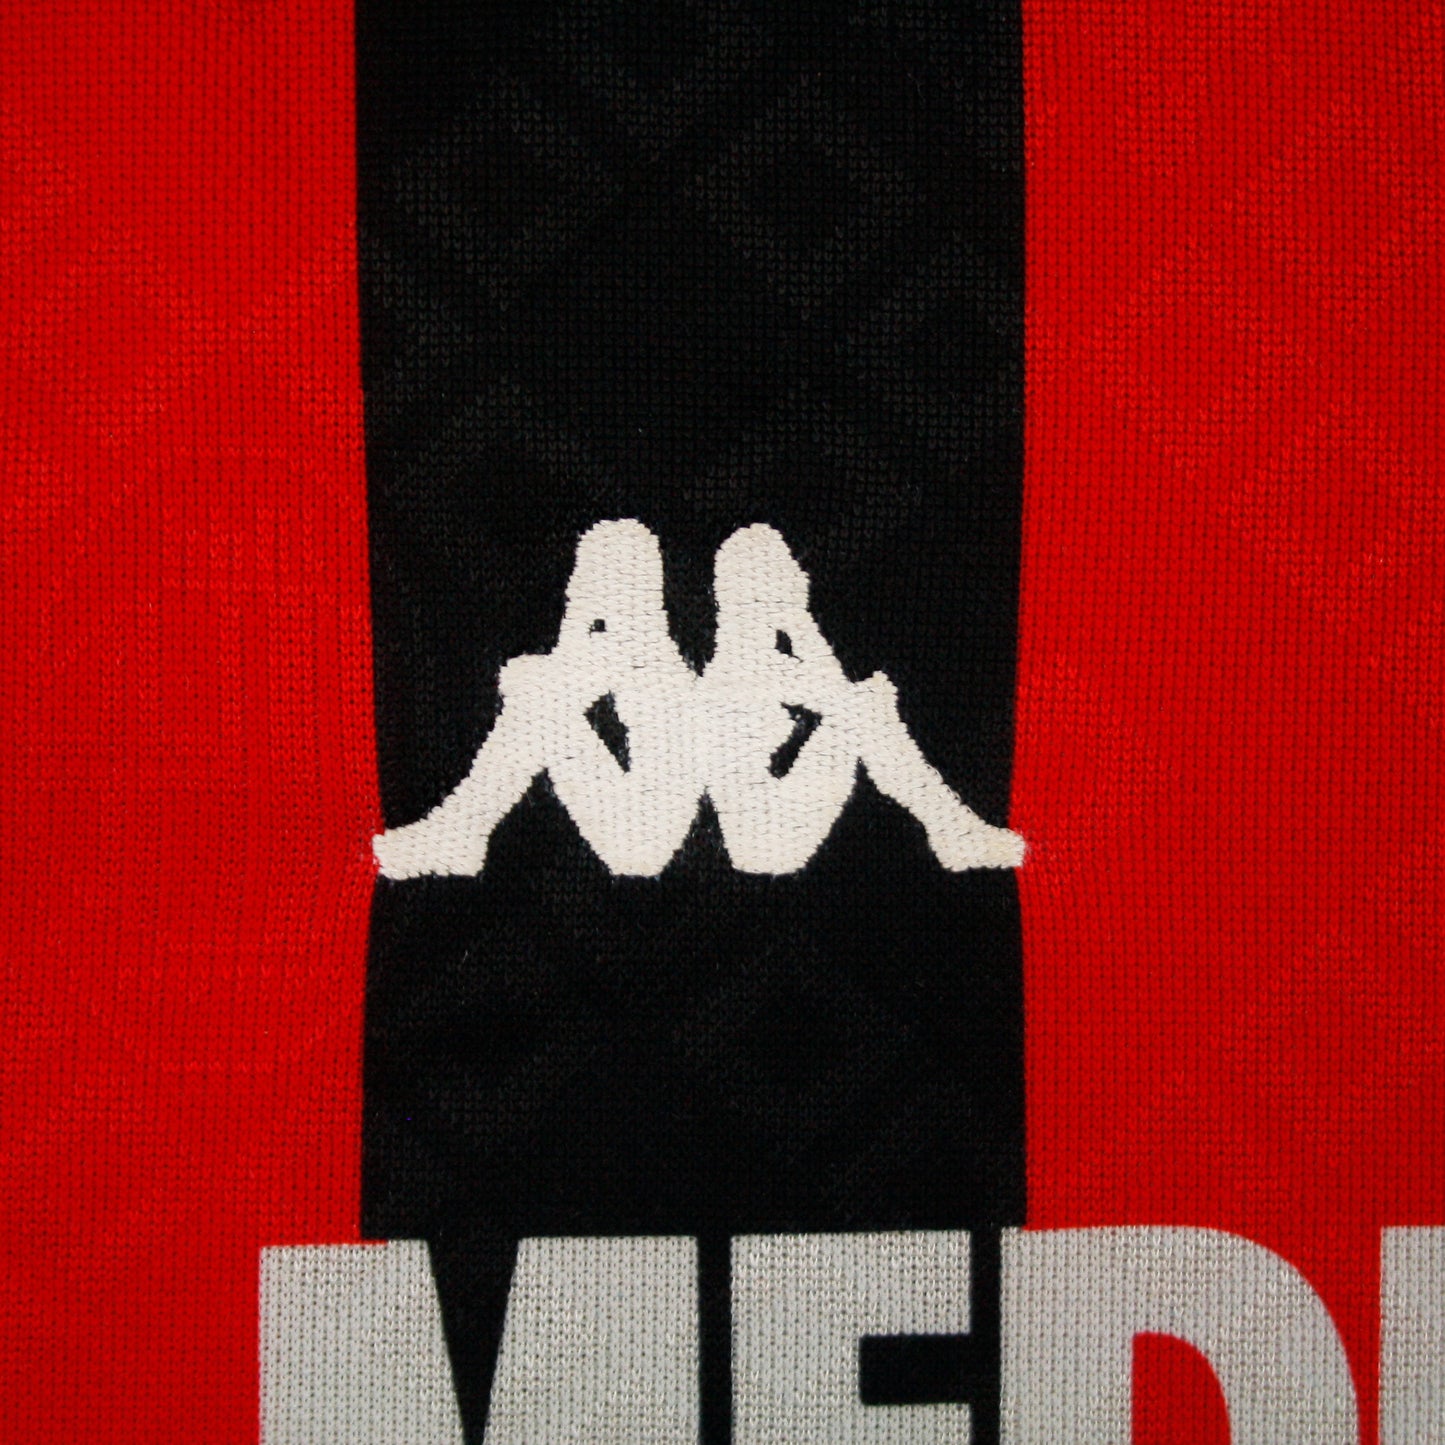 AC Milan 89/90 • Camiseta Local • M